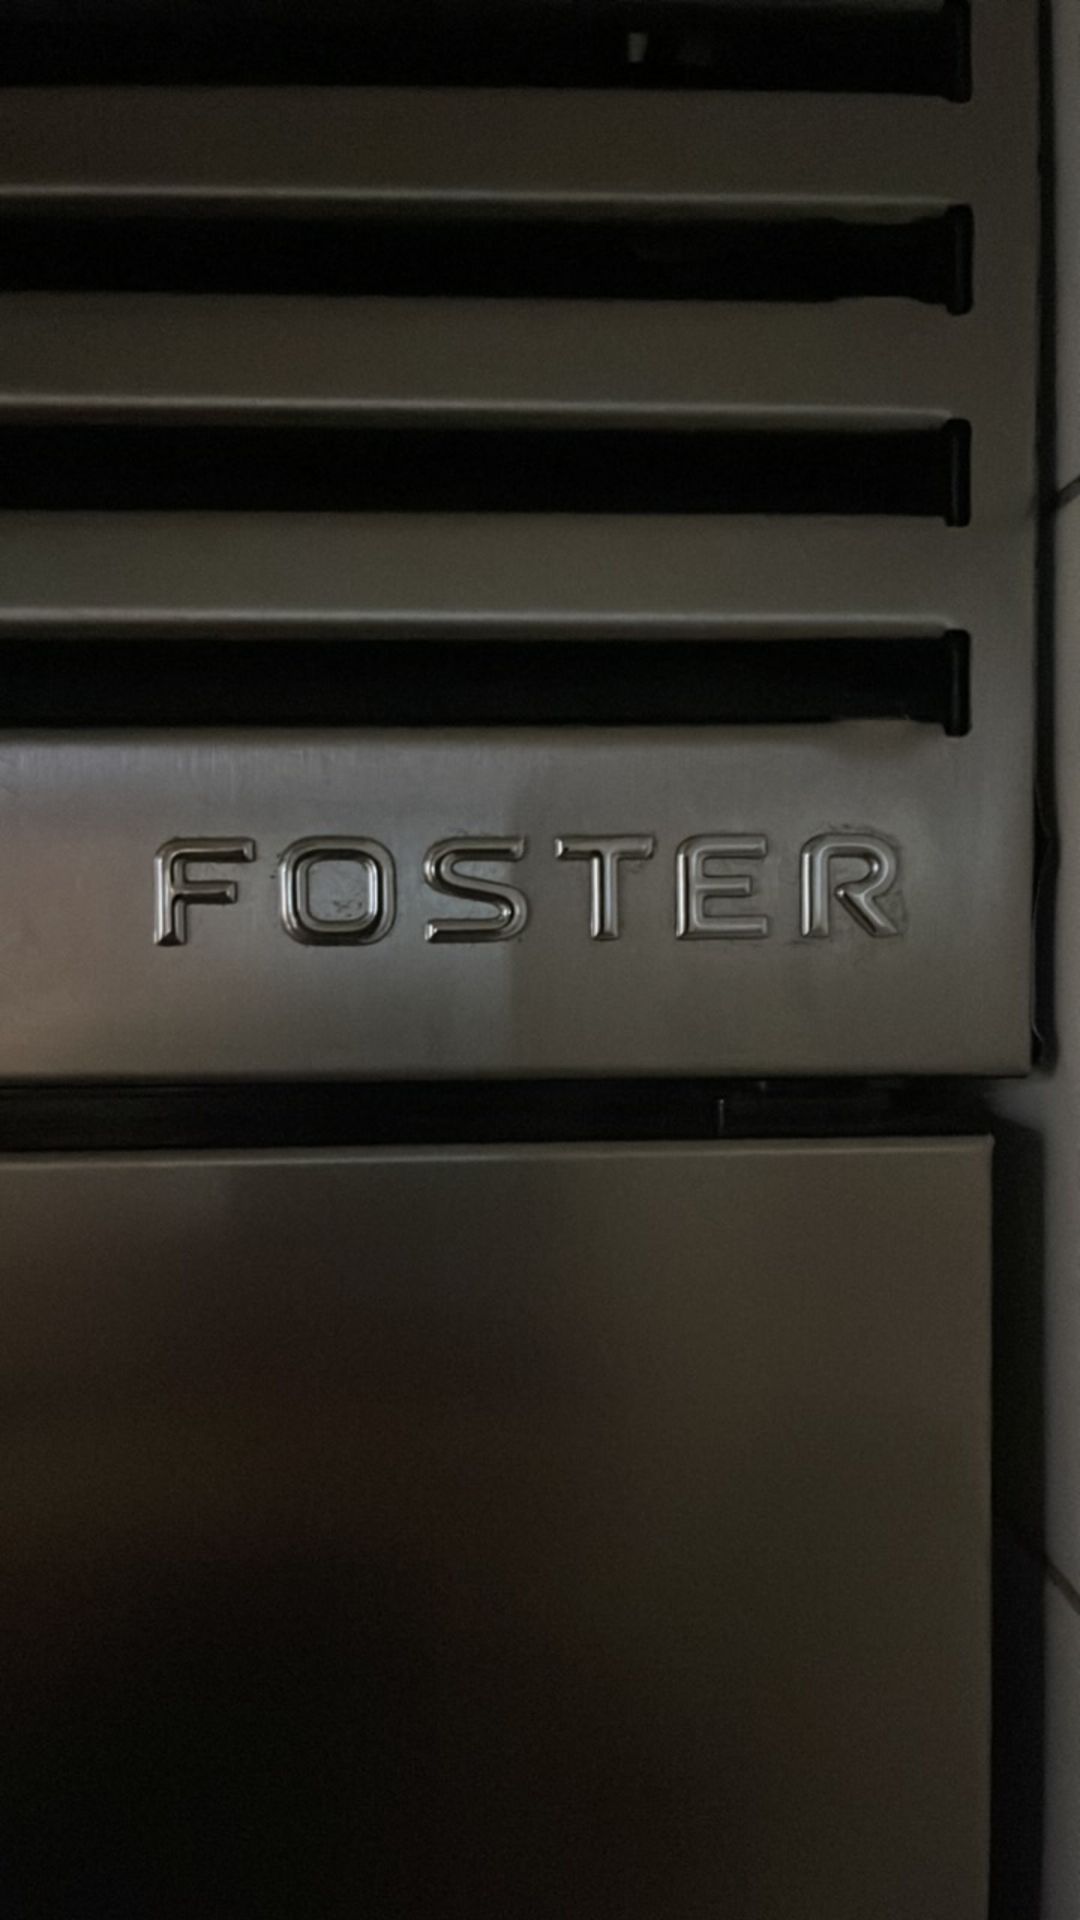 FOSTER Eco Pro G2 Freezer - Image 3 of 7